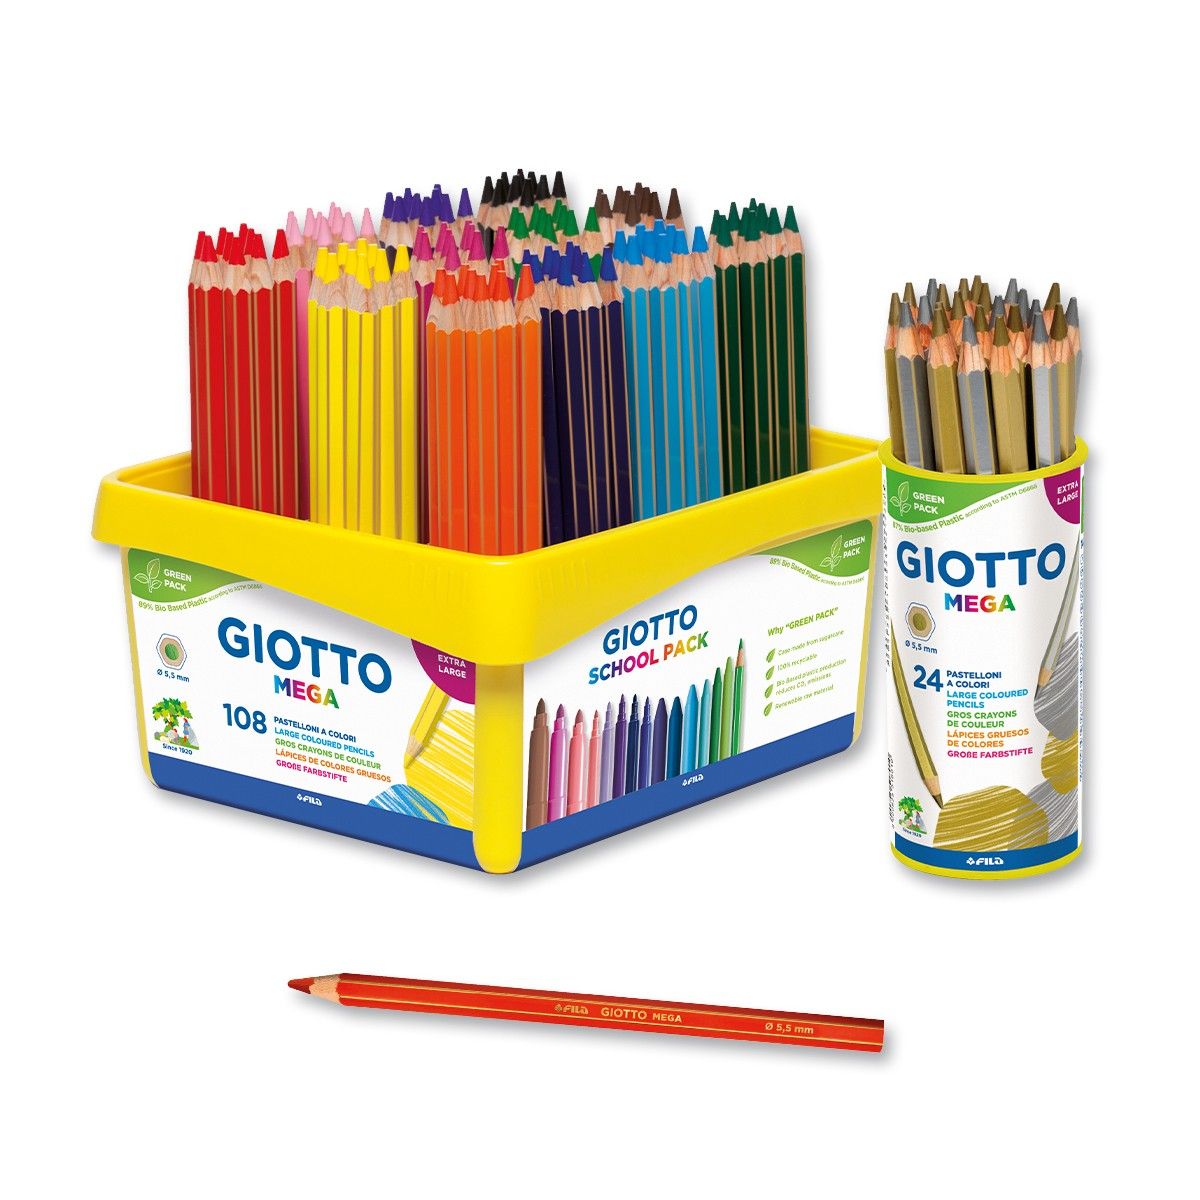 Giotto Giotto mega conf. 8 matite 0 8000825225413